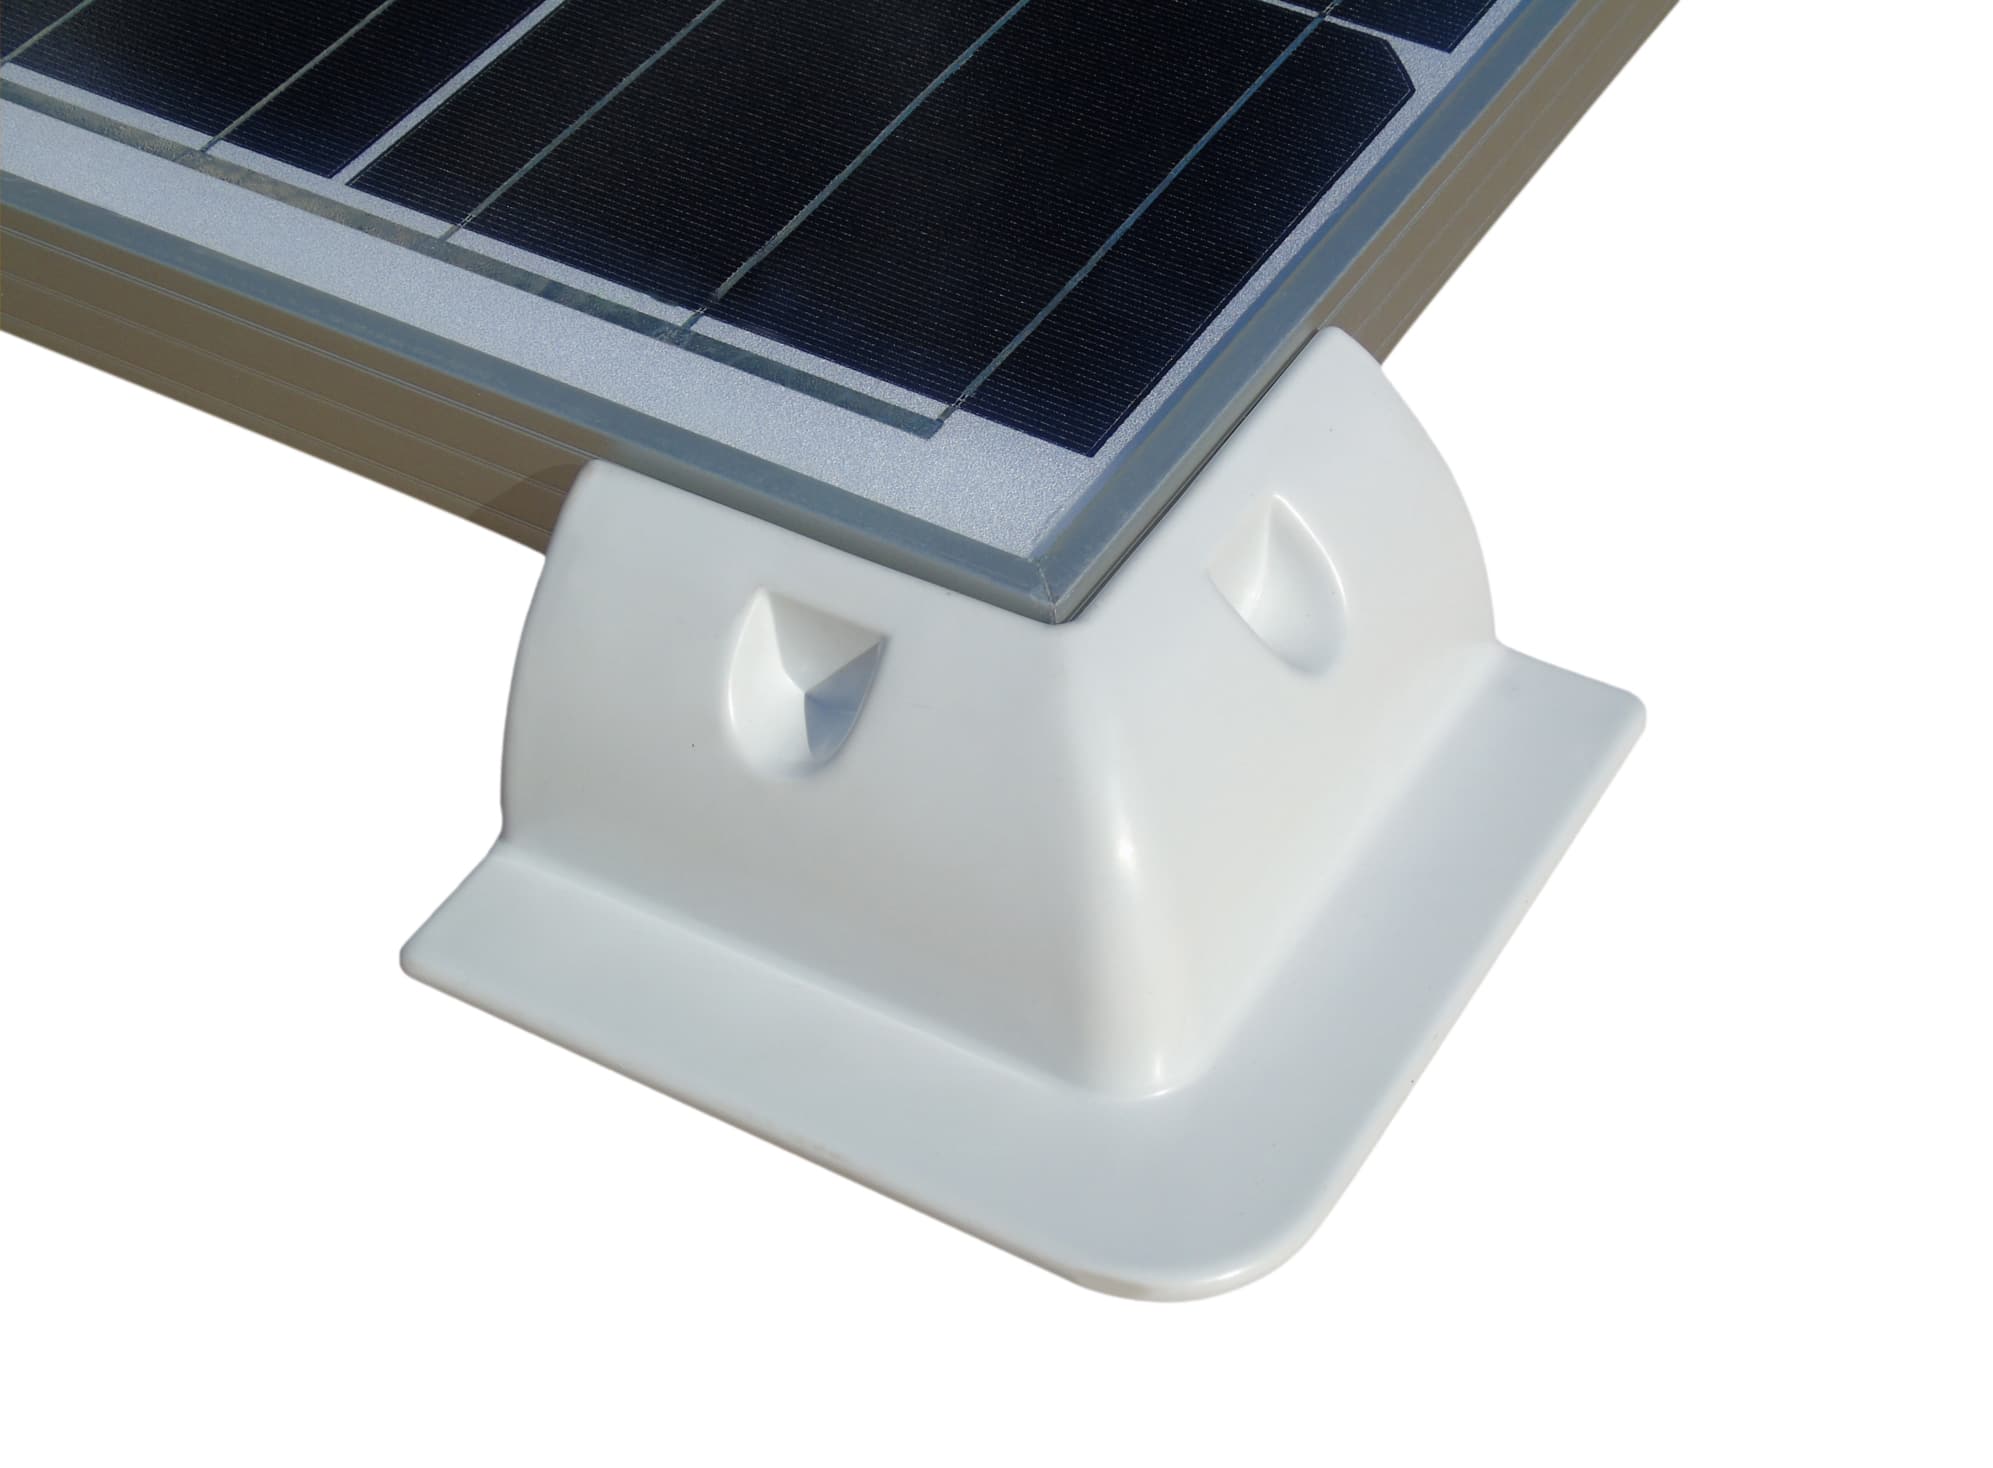 Solarpanel Halterung selbstbau und das Gewicht für Wohnmobil und Wohnwagen  